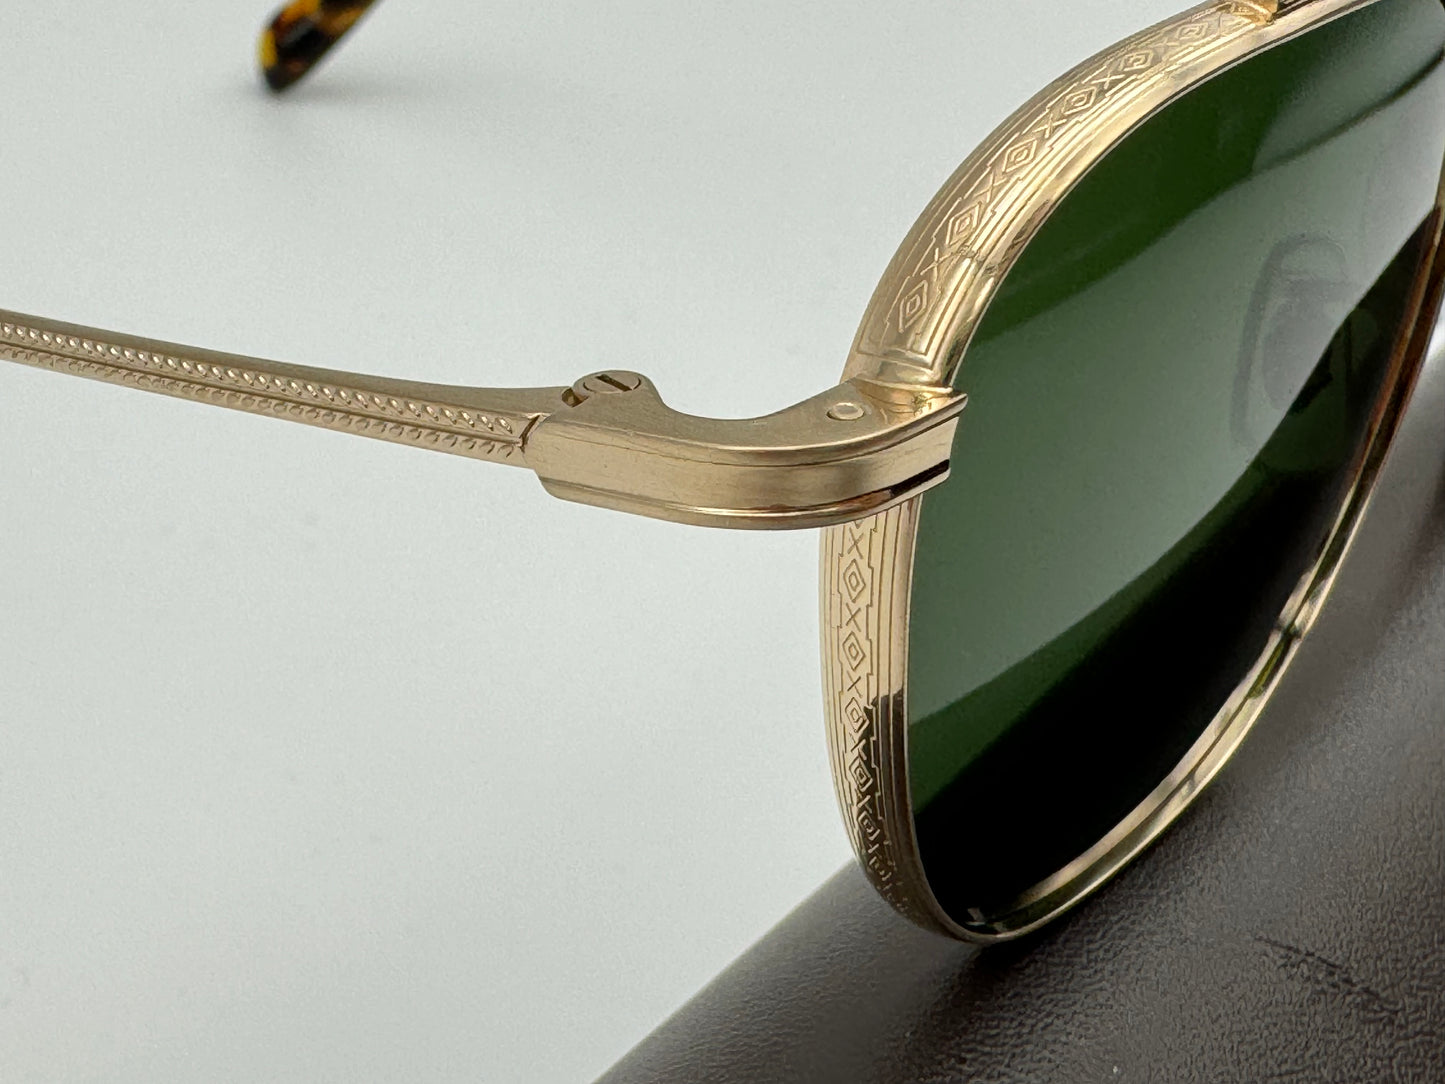 Oliver Peoples MANDEVILLE 49mm OV 1294 ST 531171 Green / Brushed Gold Titanium Sunglasses Japan NEW